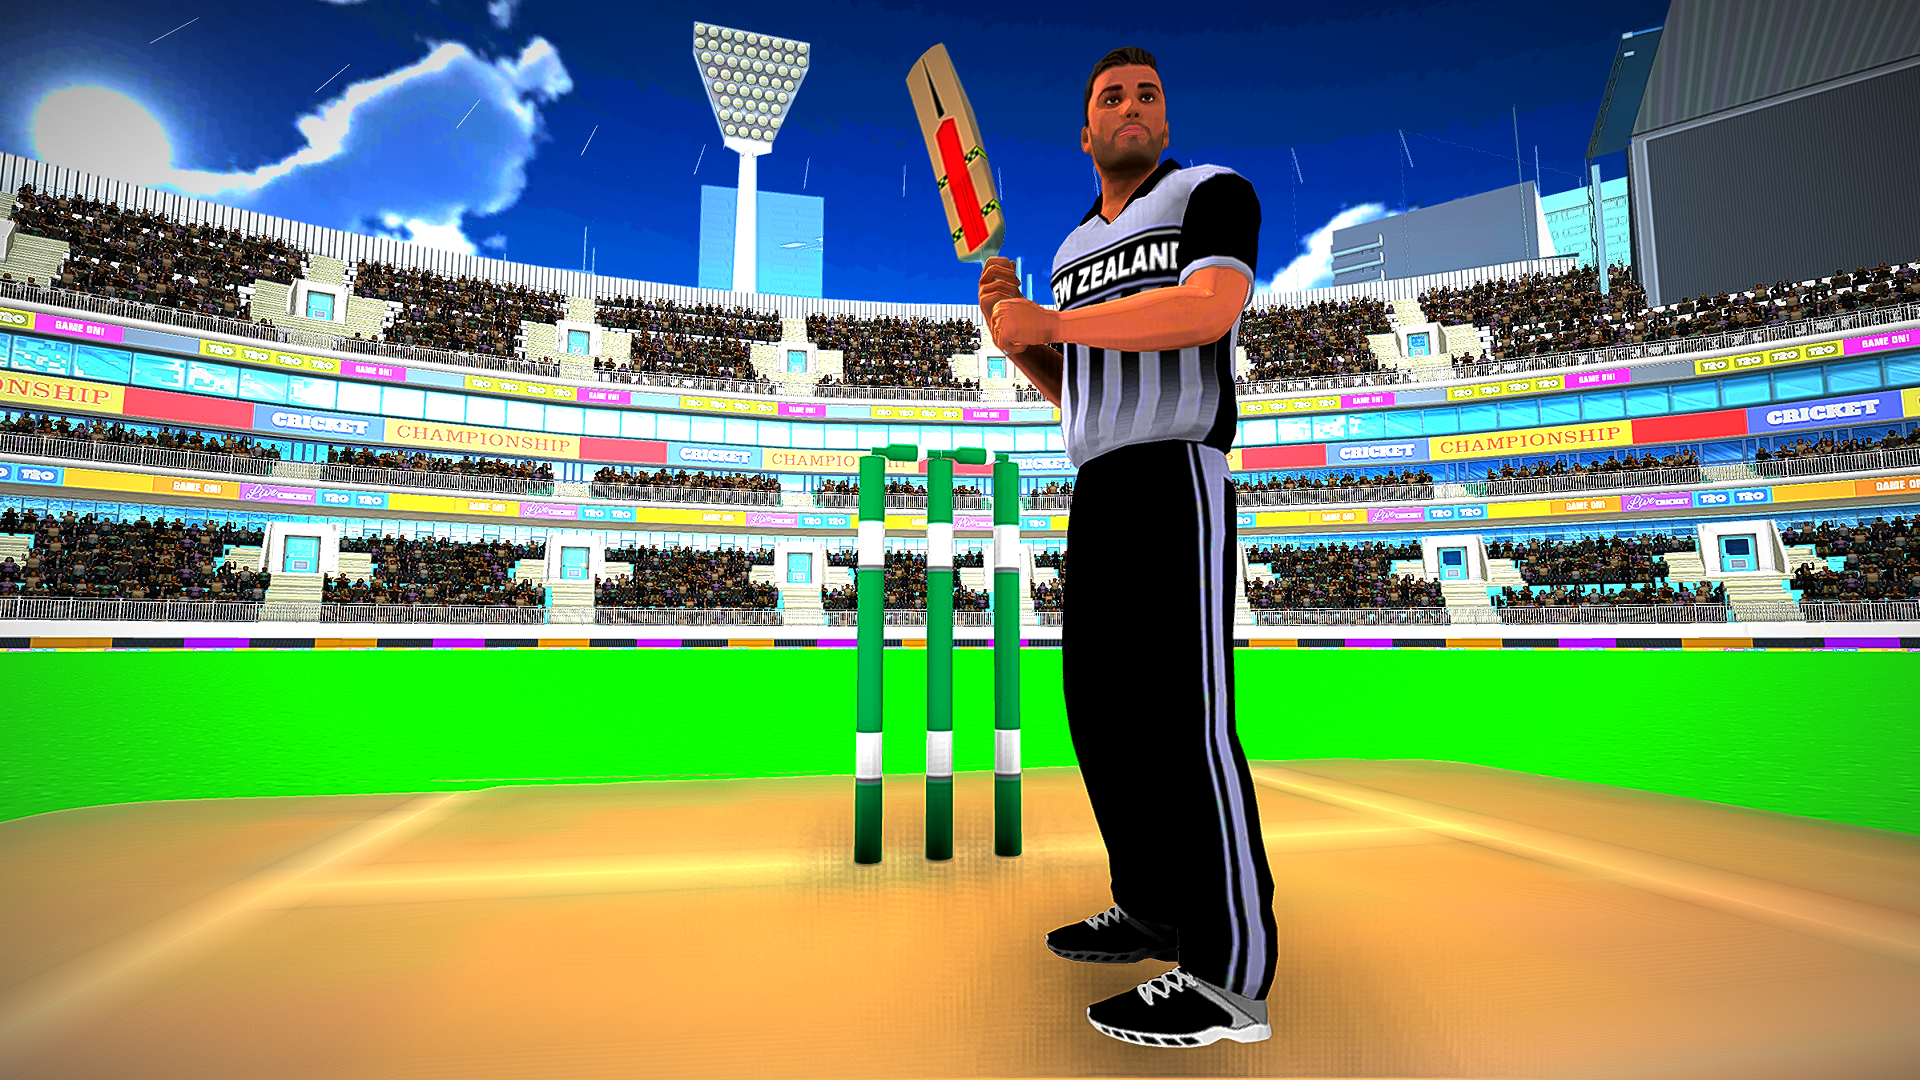 Screenshot 1 of विश्व कप टी 20 क्रिकेट खेल 2